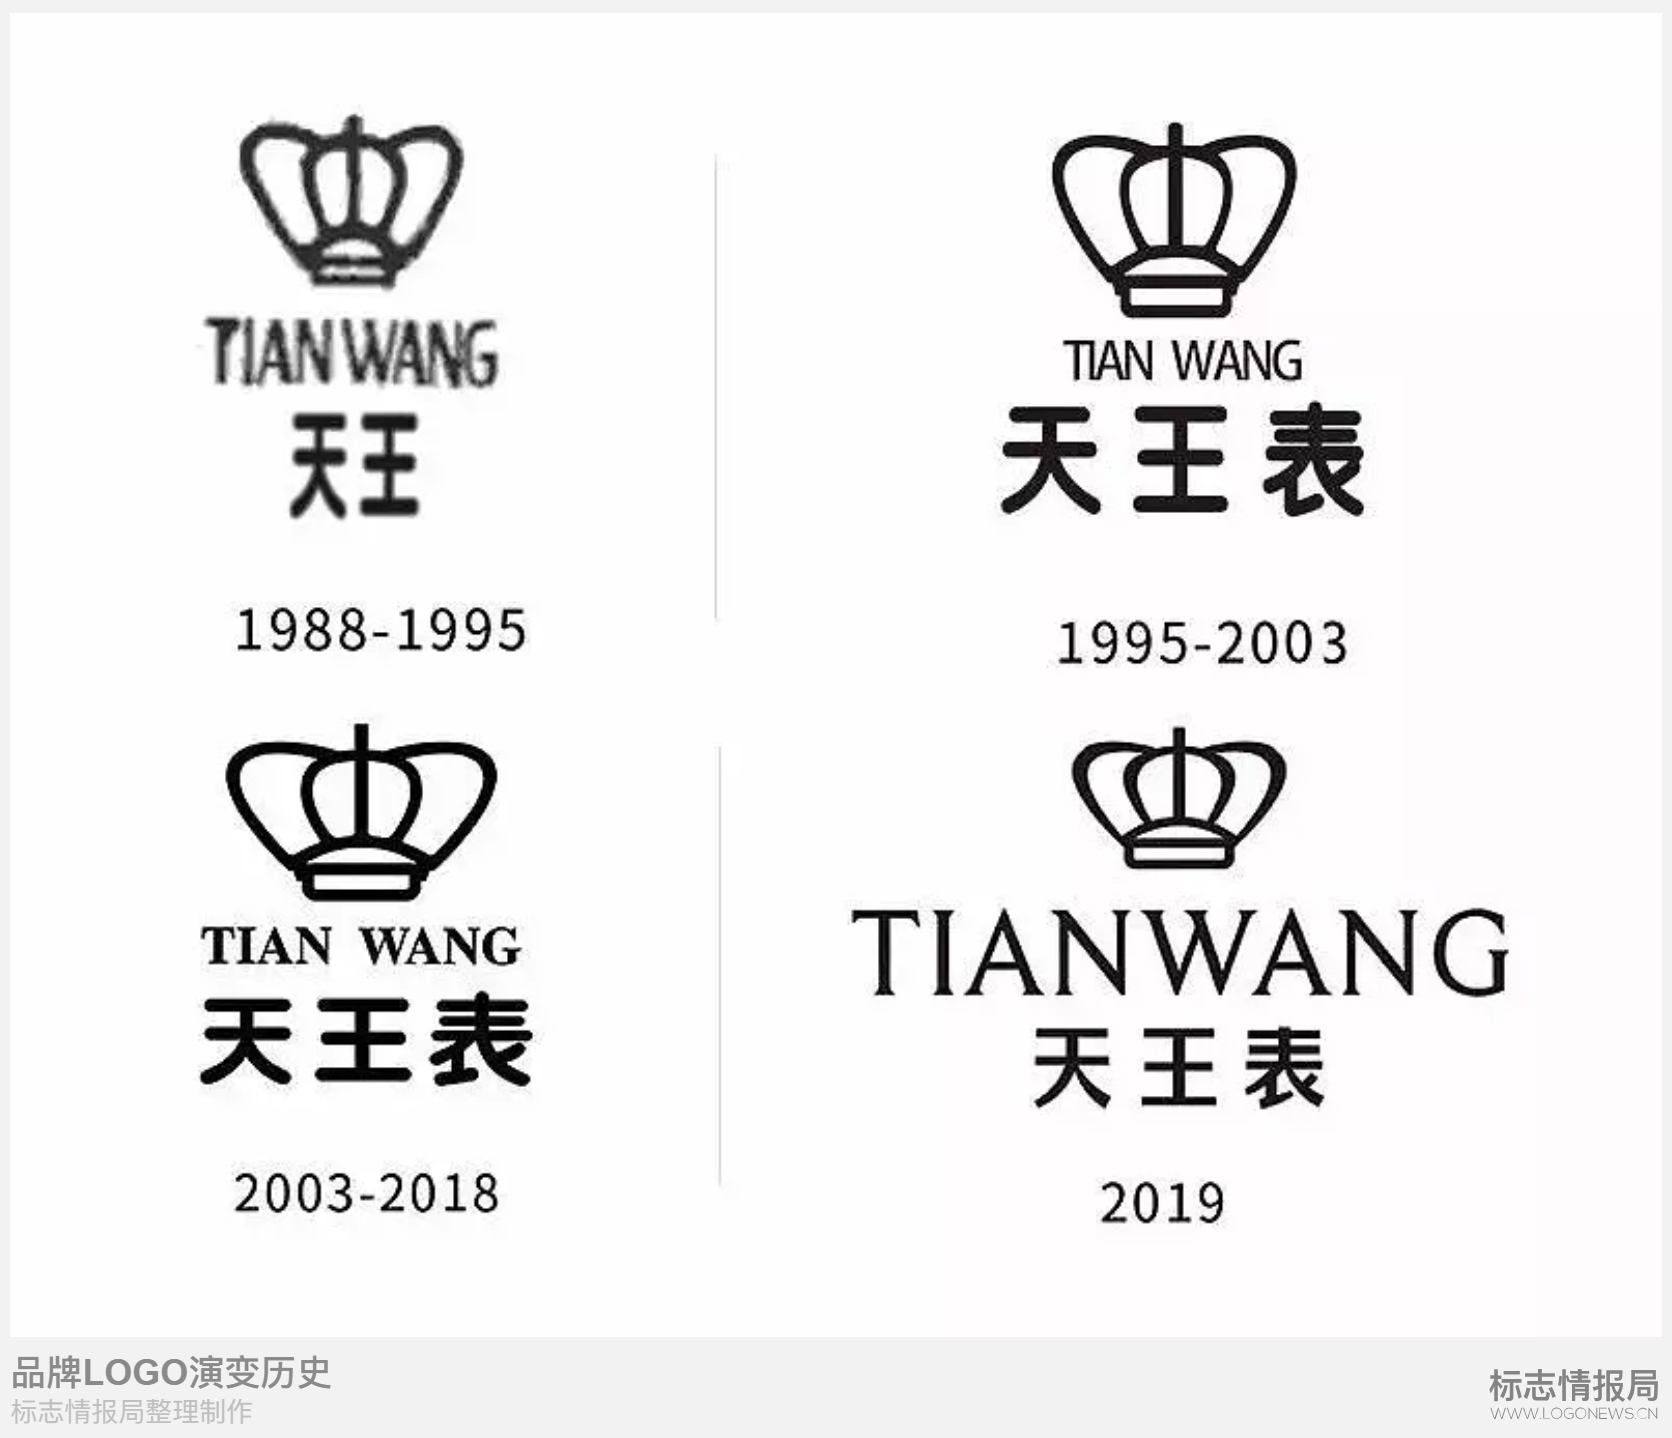 国内知名腕表品牌天王表启用全新logo